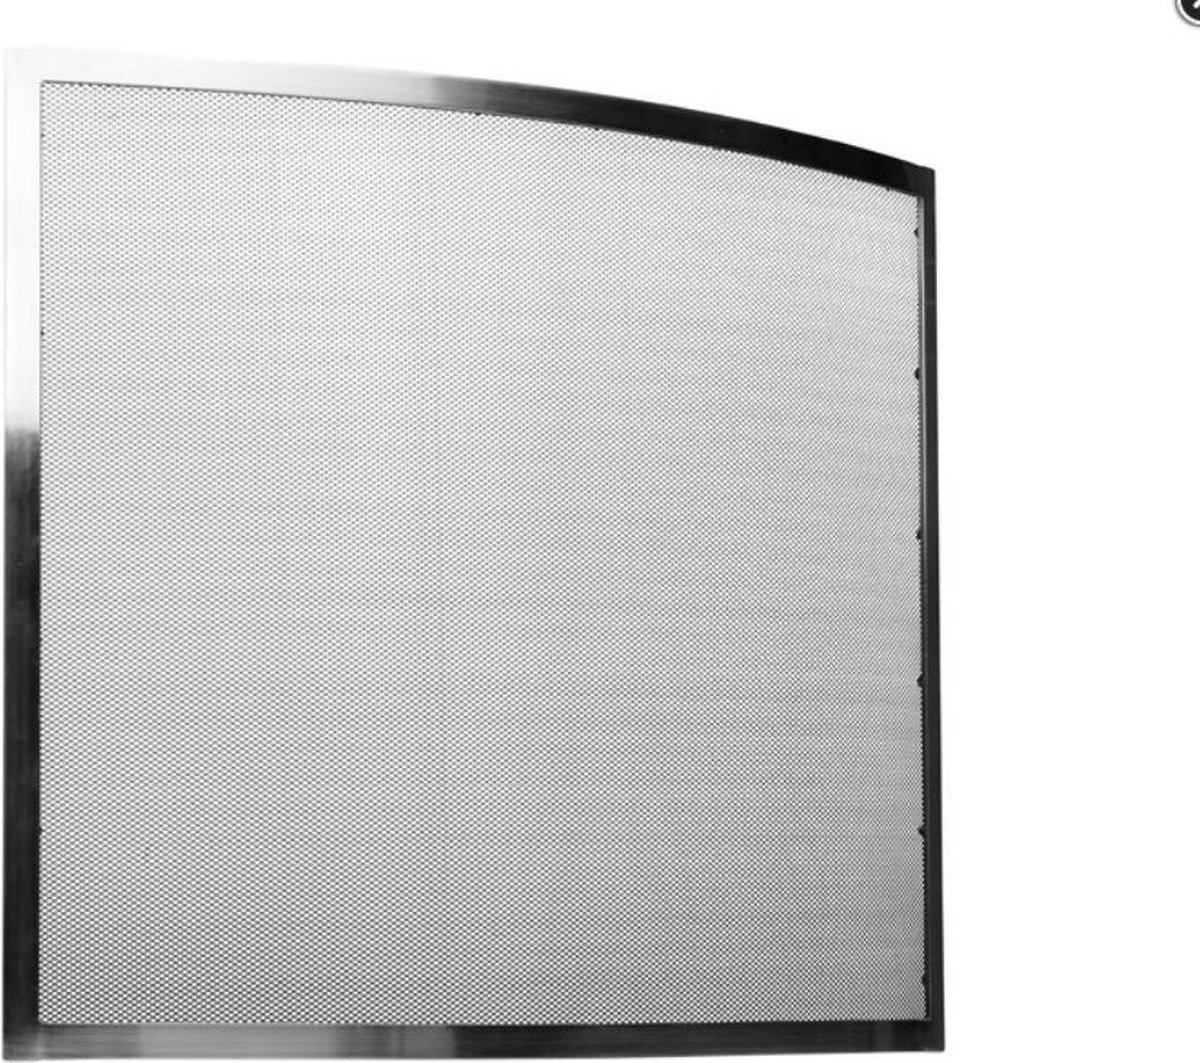 Haardscherm disign nikkel 69x63.5cm - Practo Home